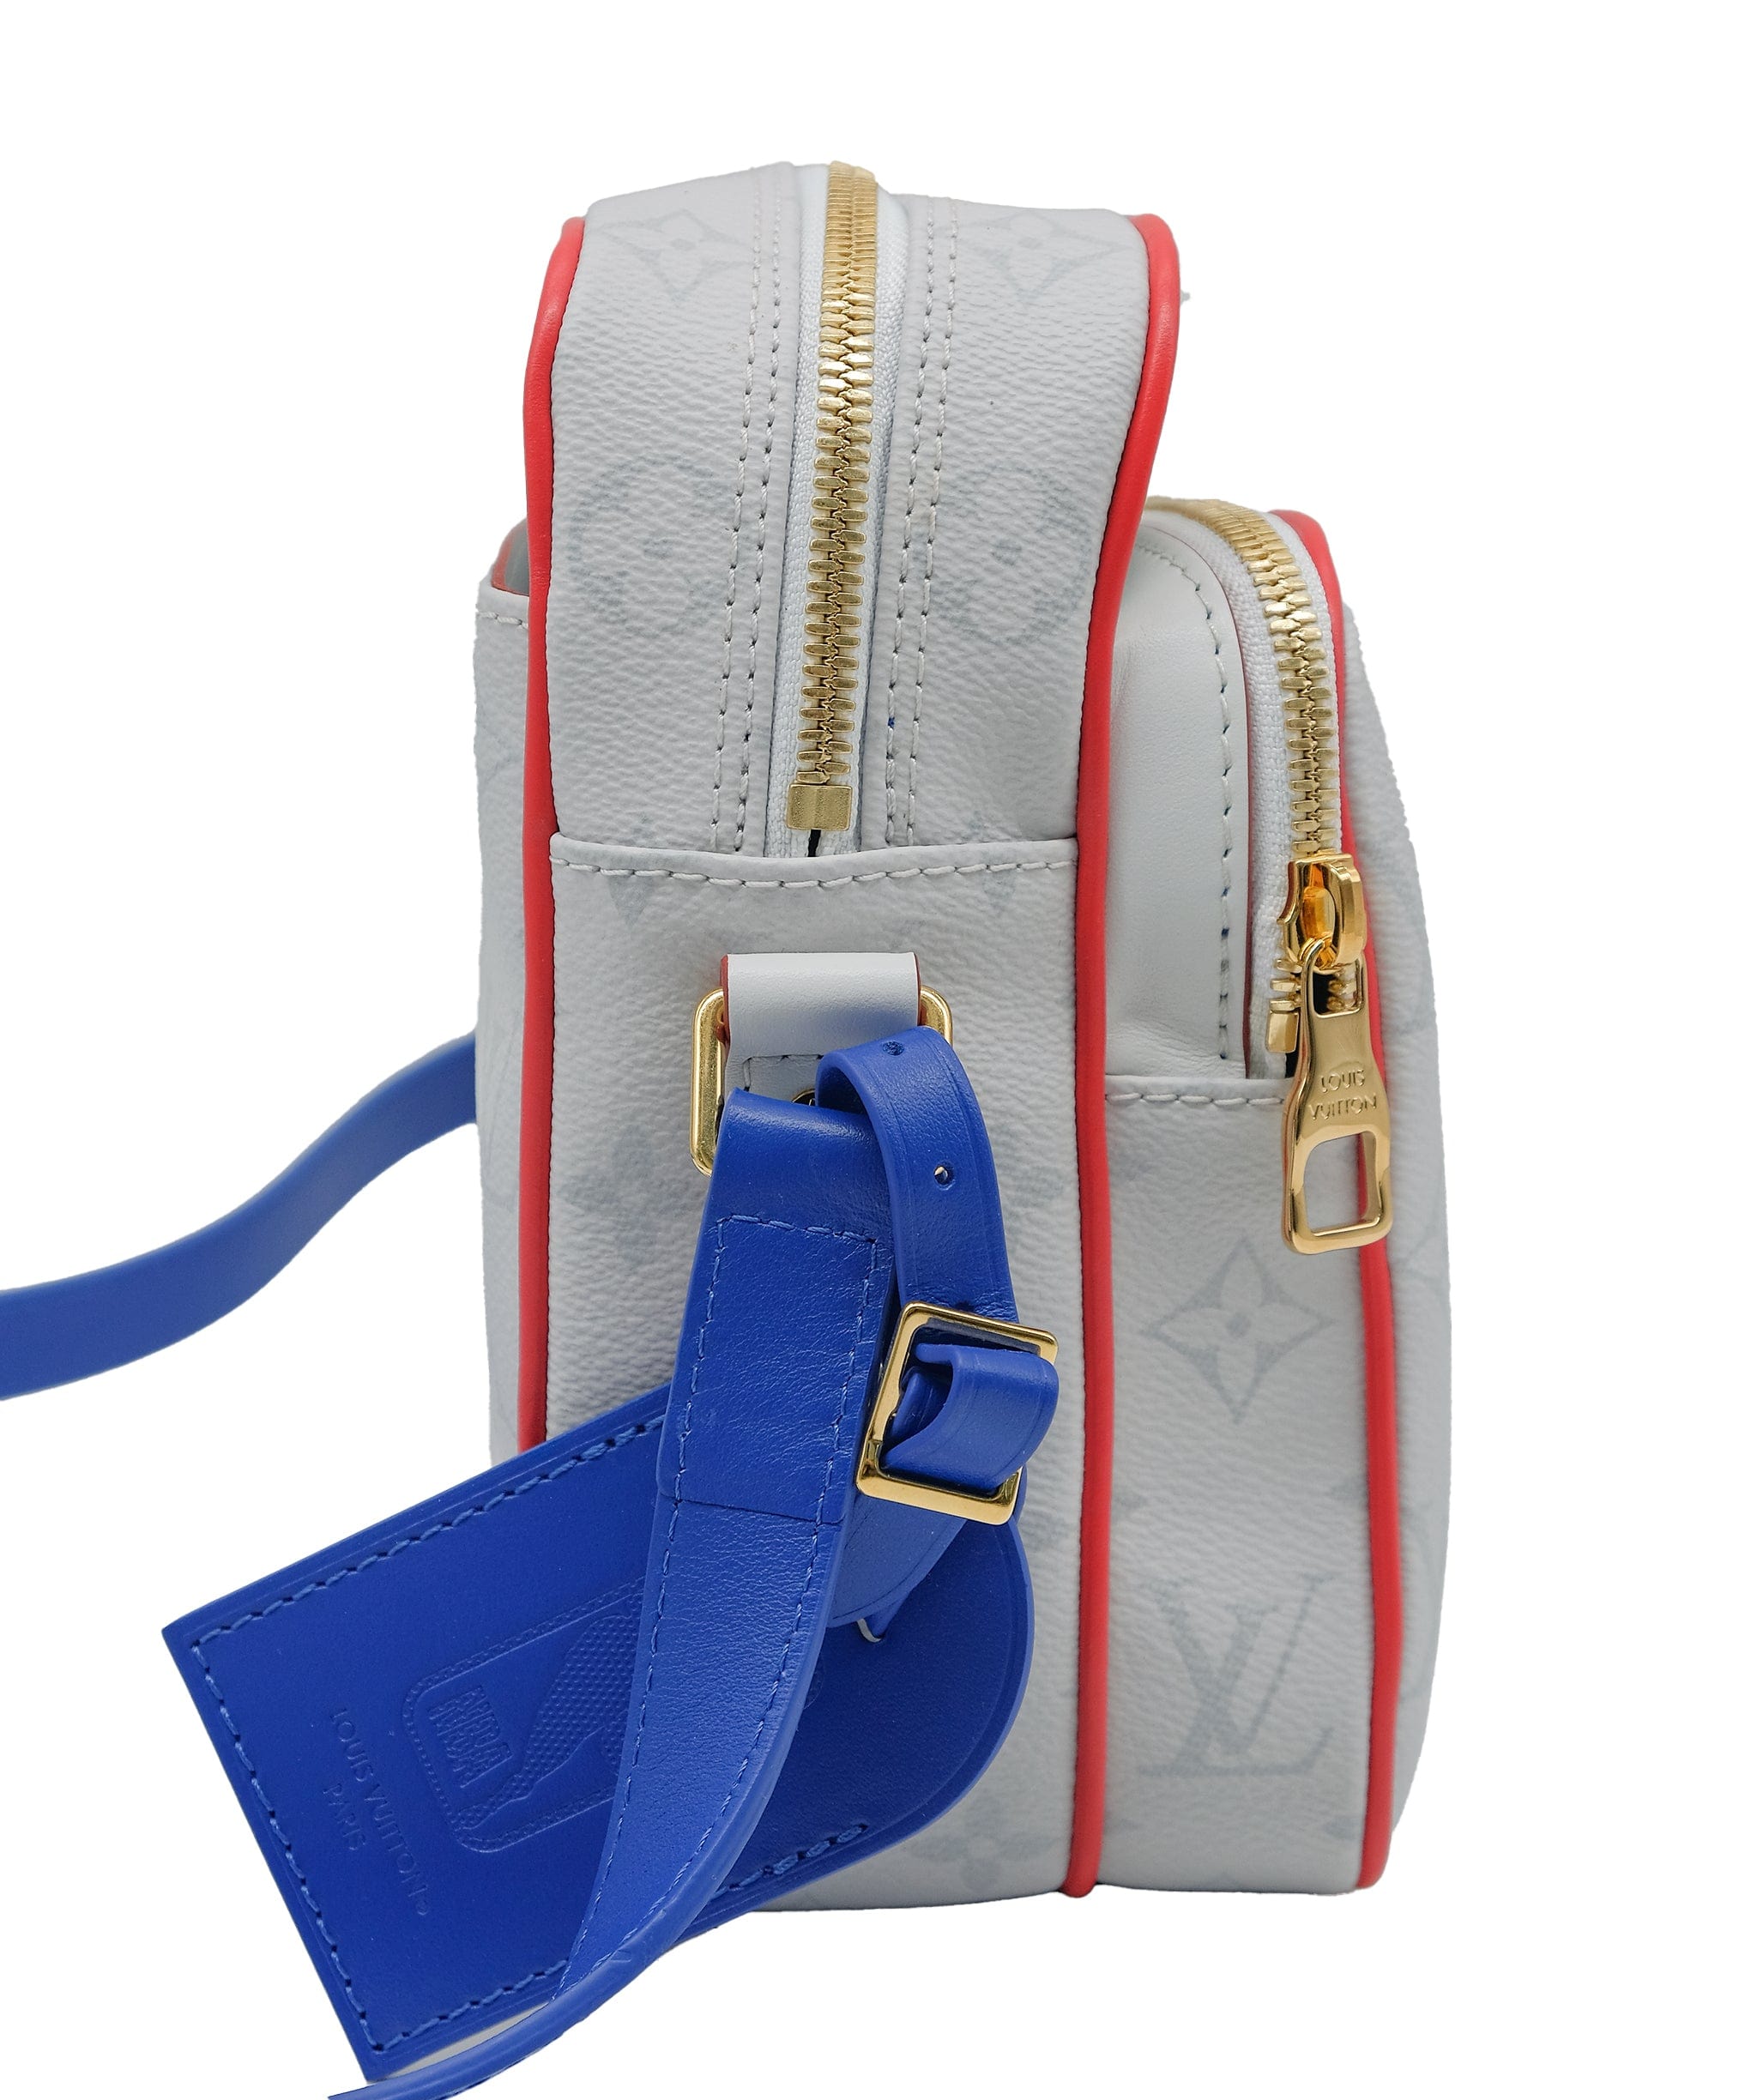 Louis Vuitton Louis Vuitton X NBA Sling bag blue white red Big RJC3324